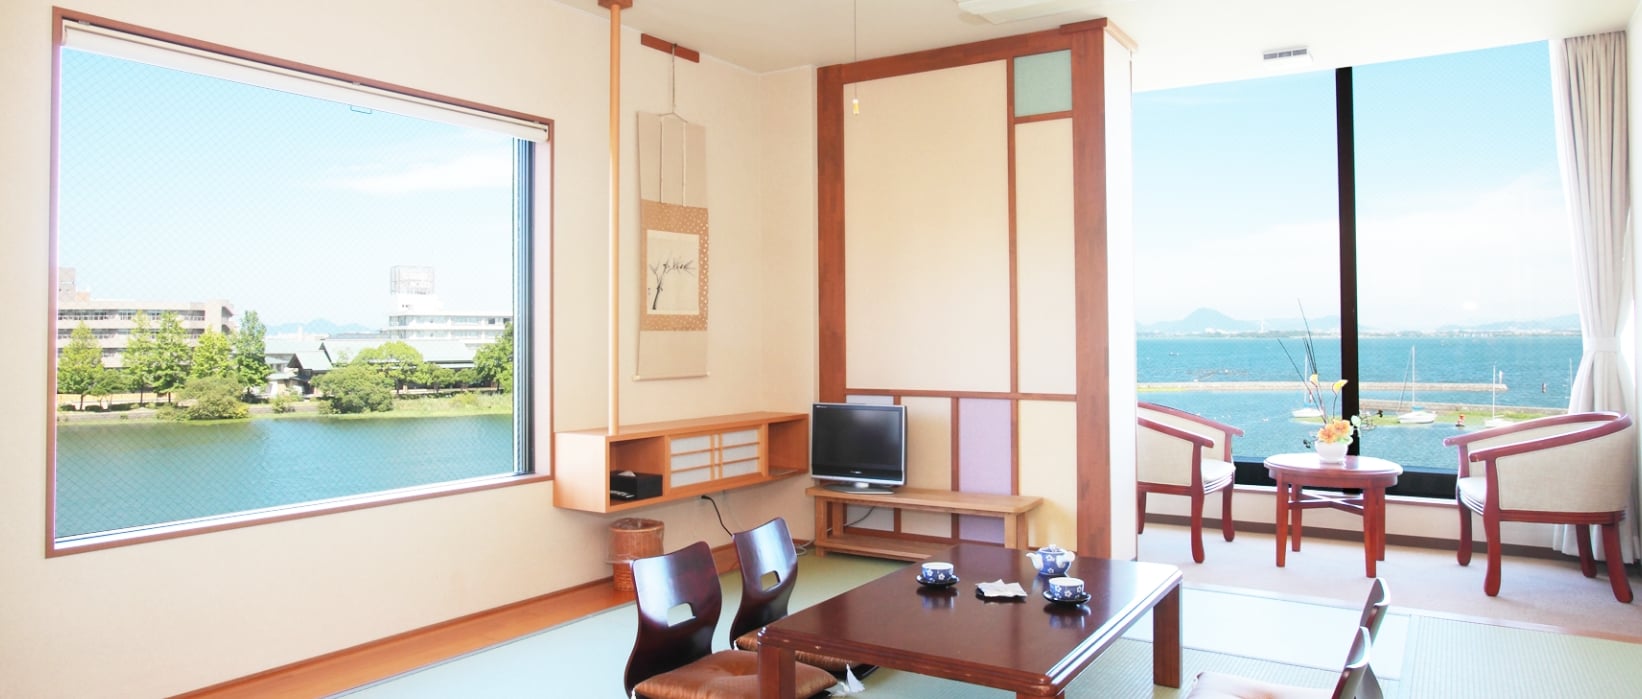 ことゆう 琵琶湖が見える部屋の写真